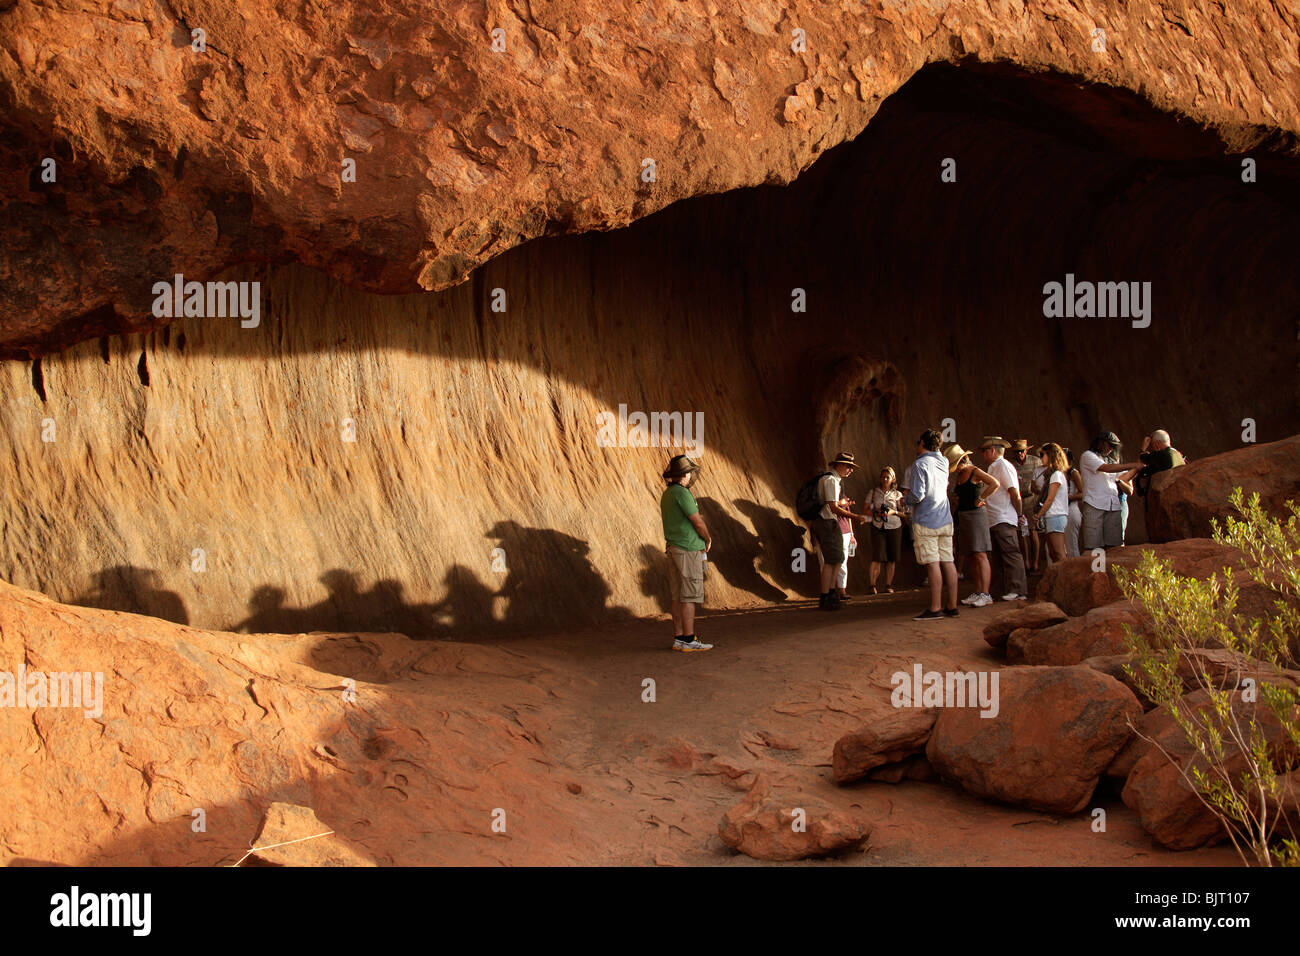 Les touristes dans une grotte de grès de renommée mondiale, l'Uluru ou Ayers Rock , Territoire du Nord, Australie Banque D'Images